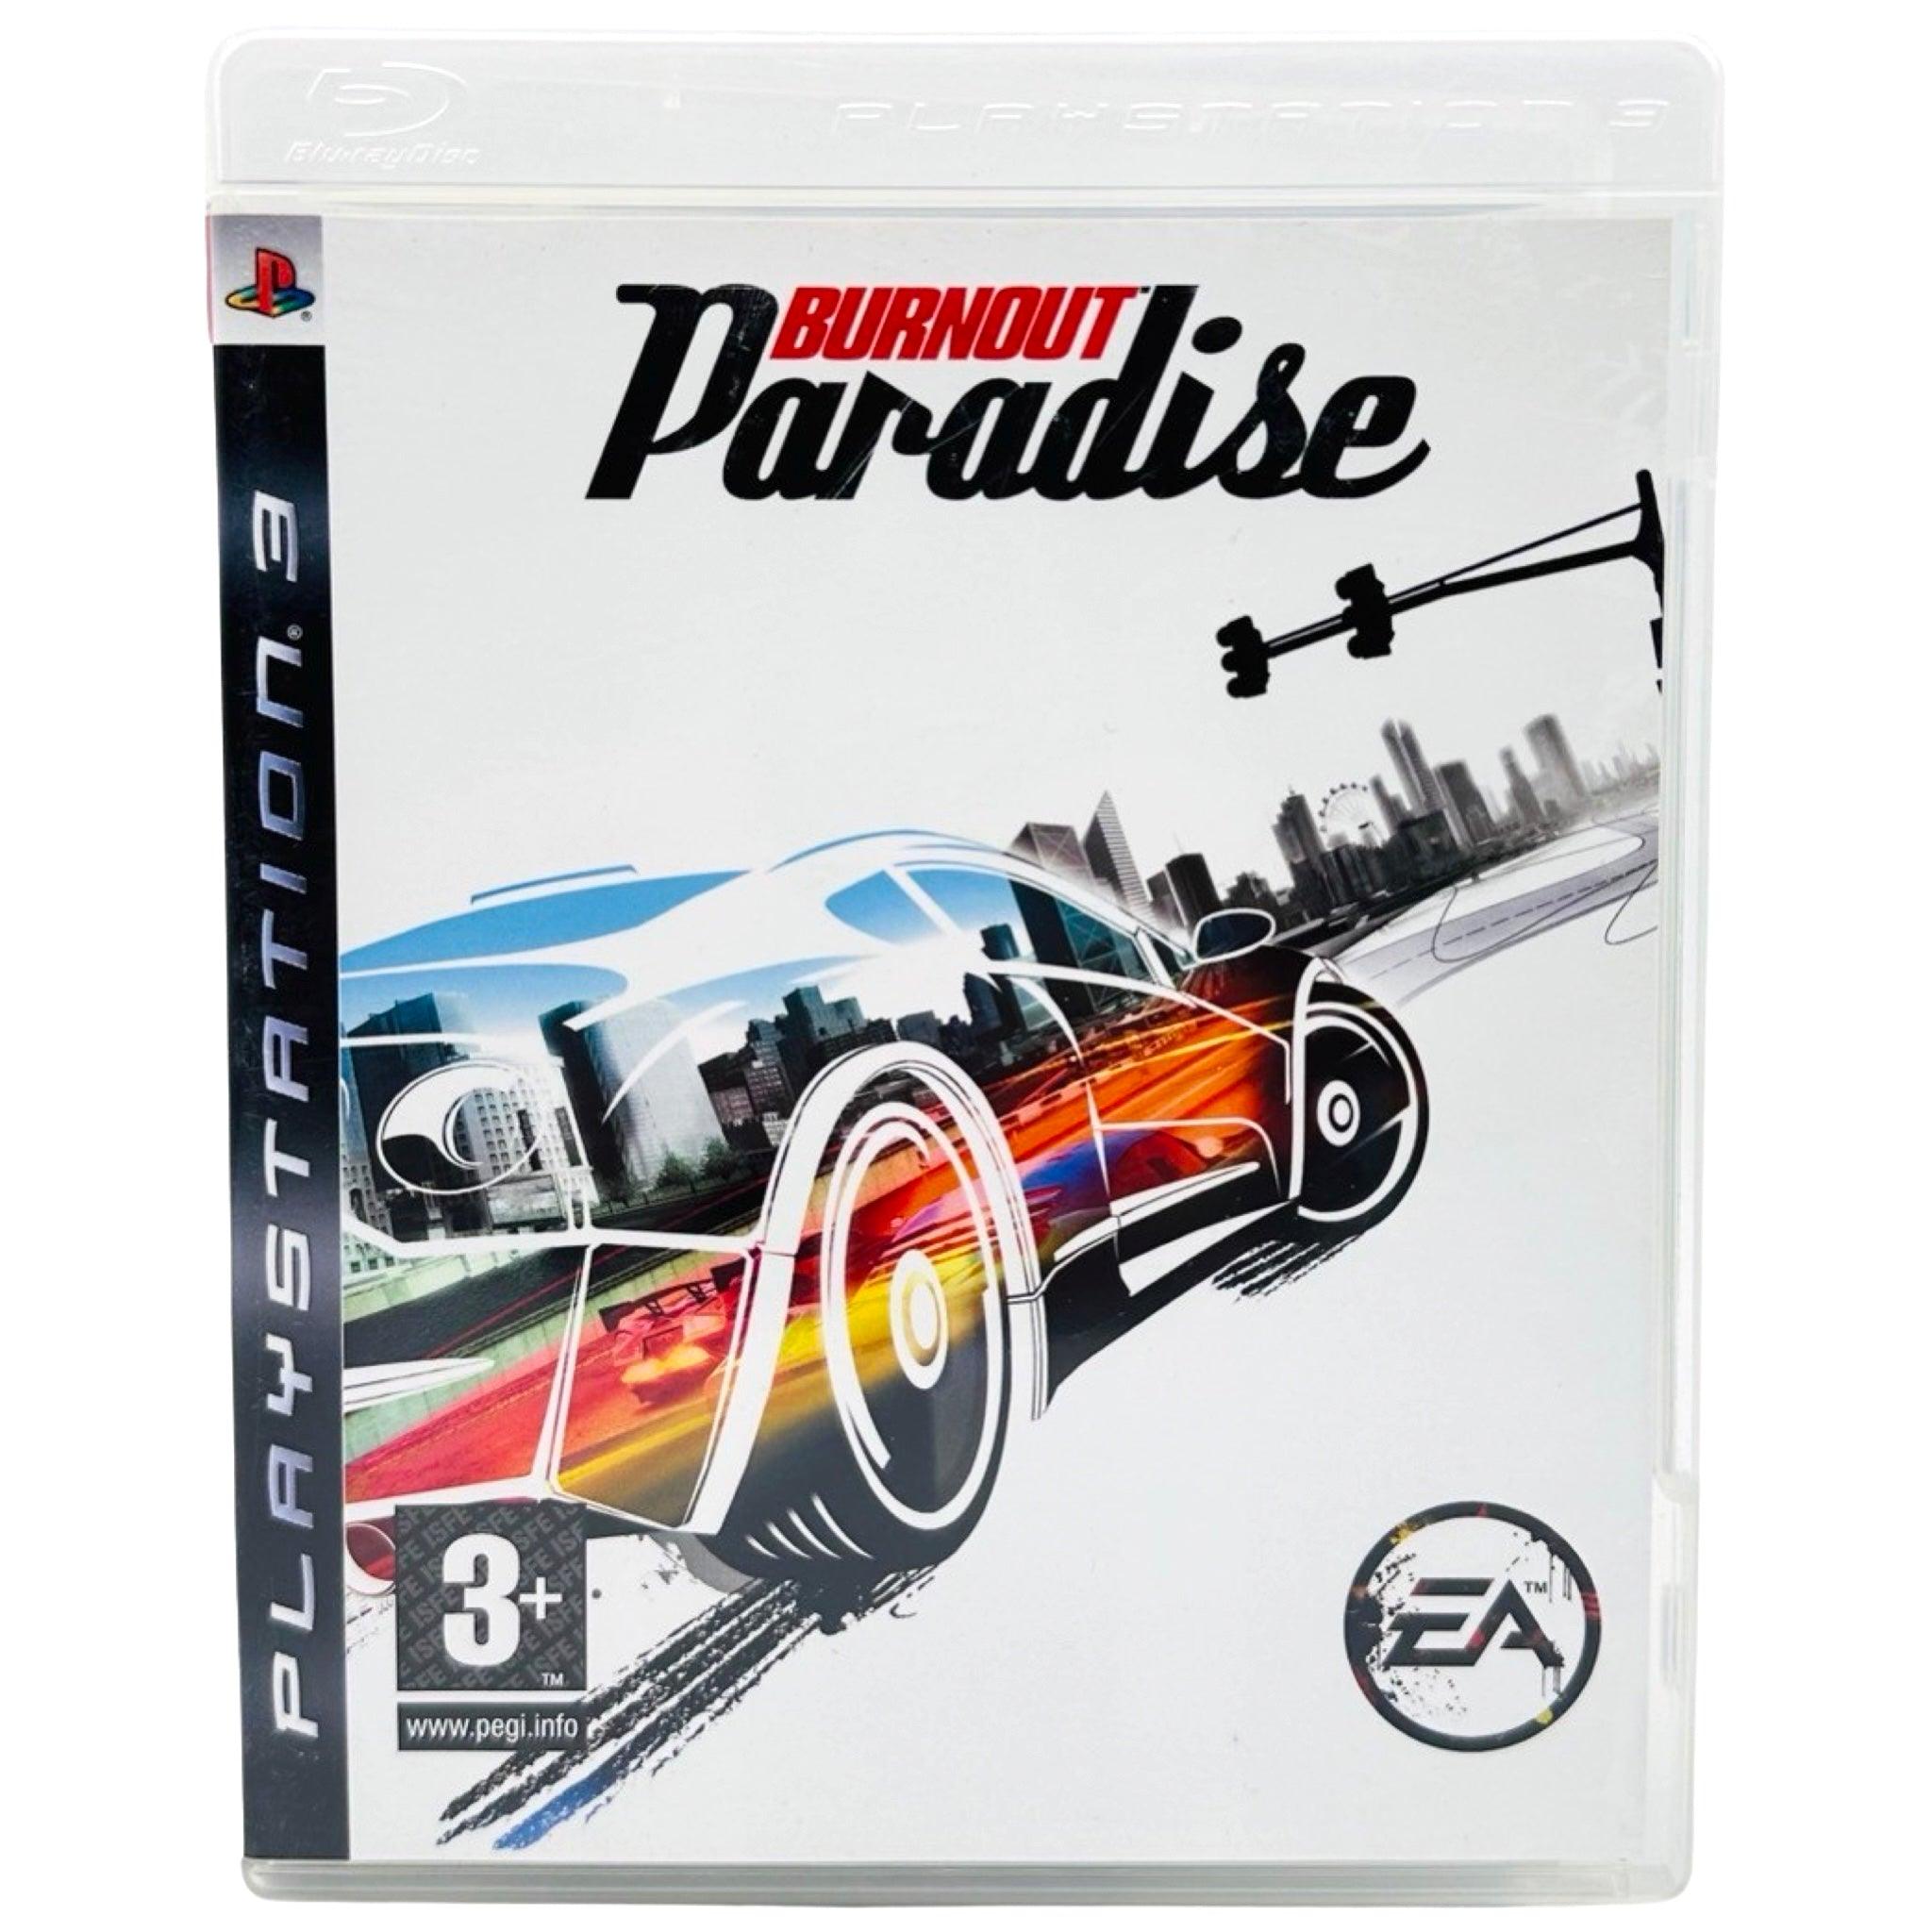 PS3: Burnout Paradise - RetroGaming.no